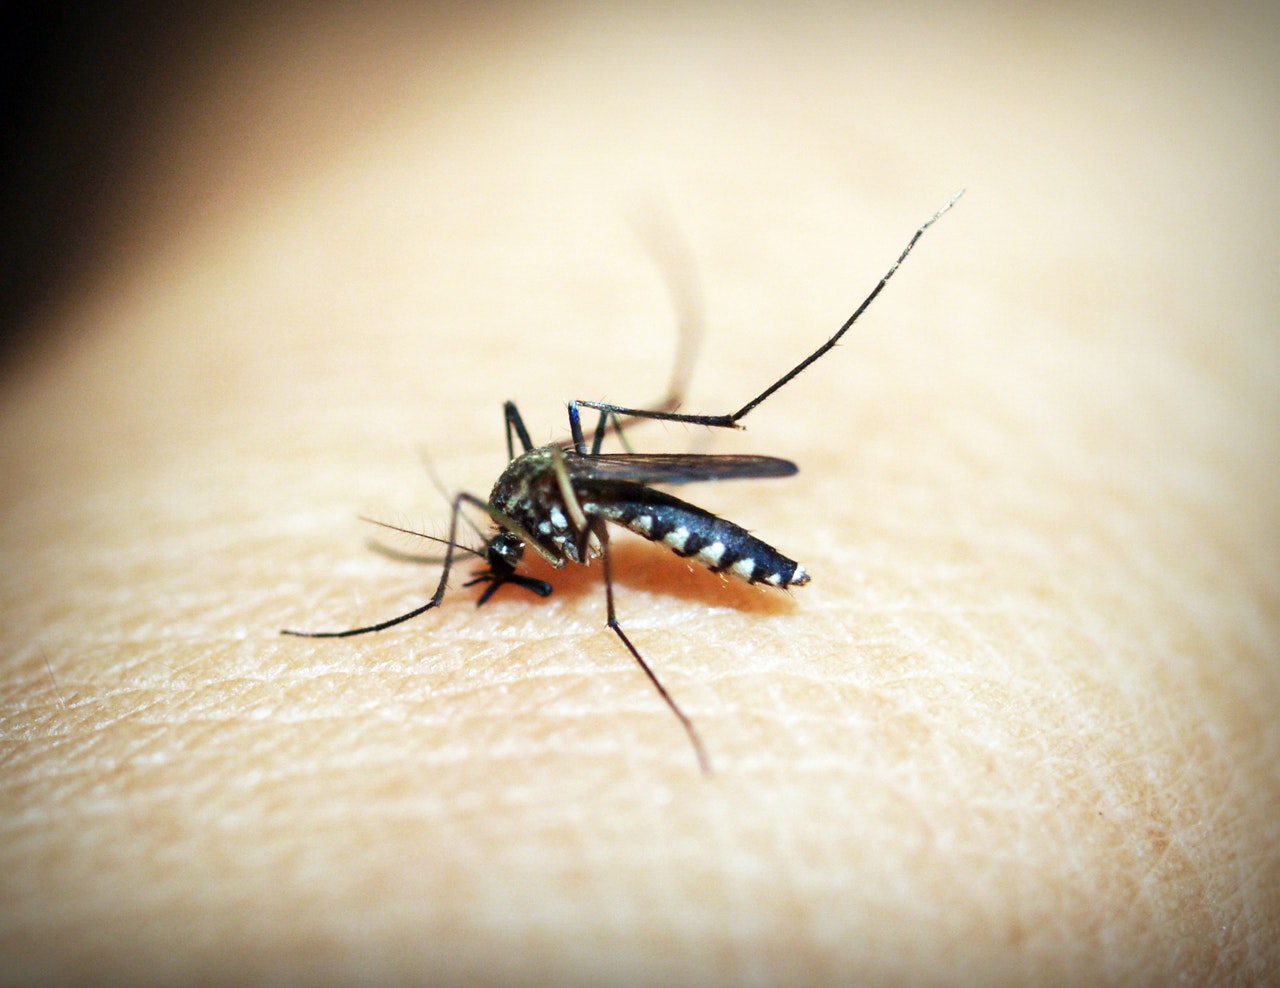 Sposoby na pozbycie się komarów